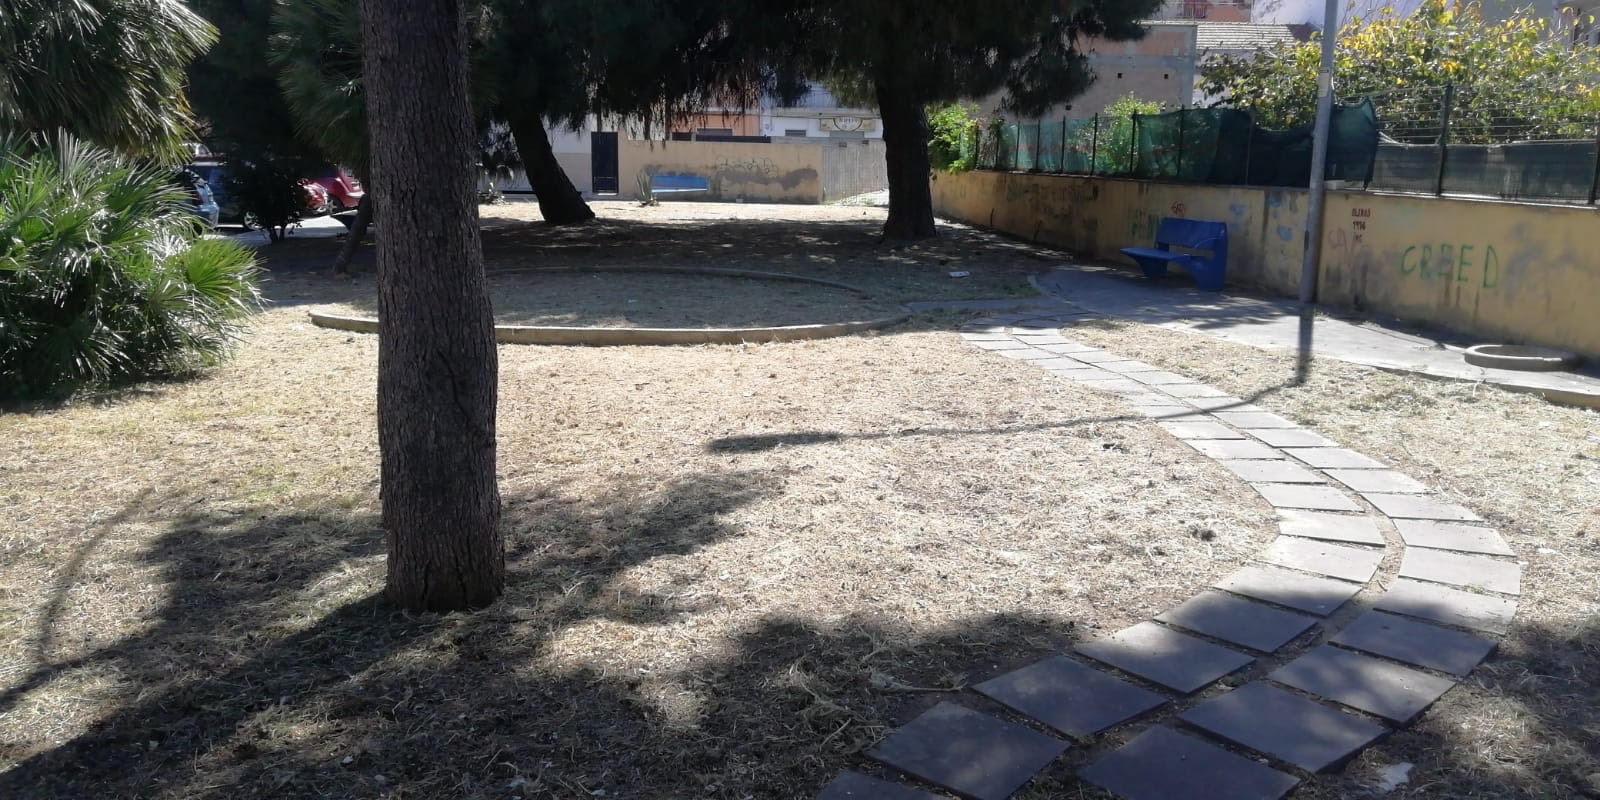 Reggio, La riqualificazione passa dai cittadini: ripulita la villetta di via Botteghelle